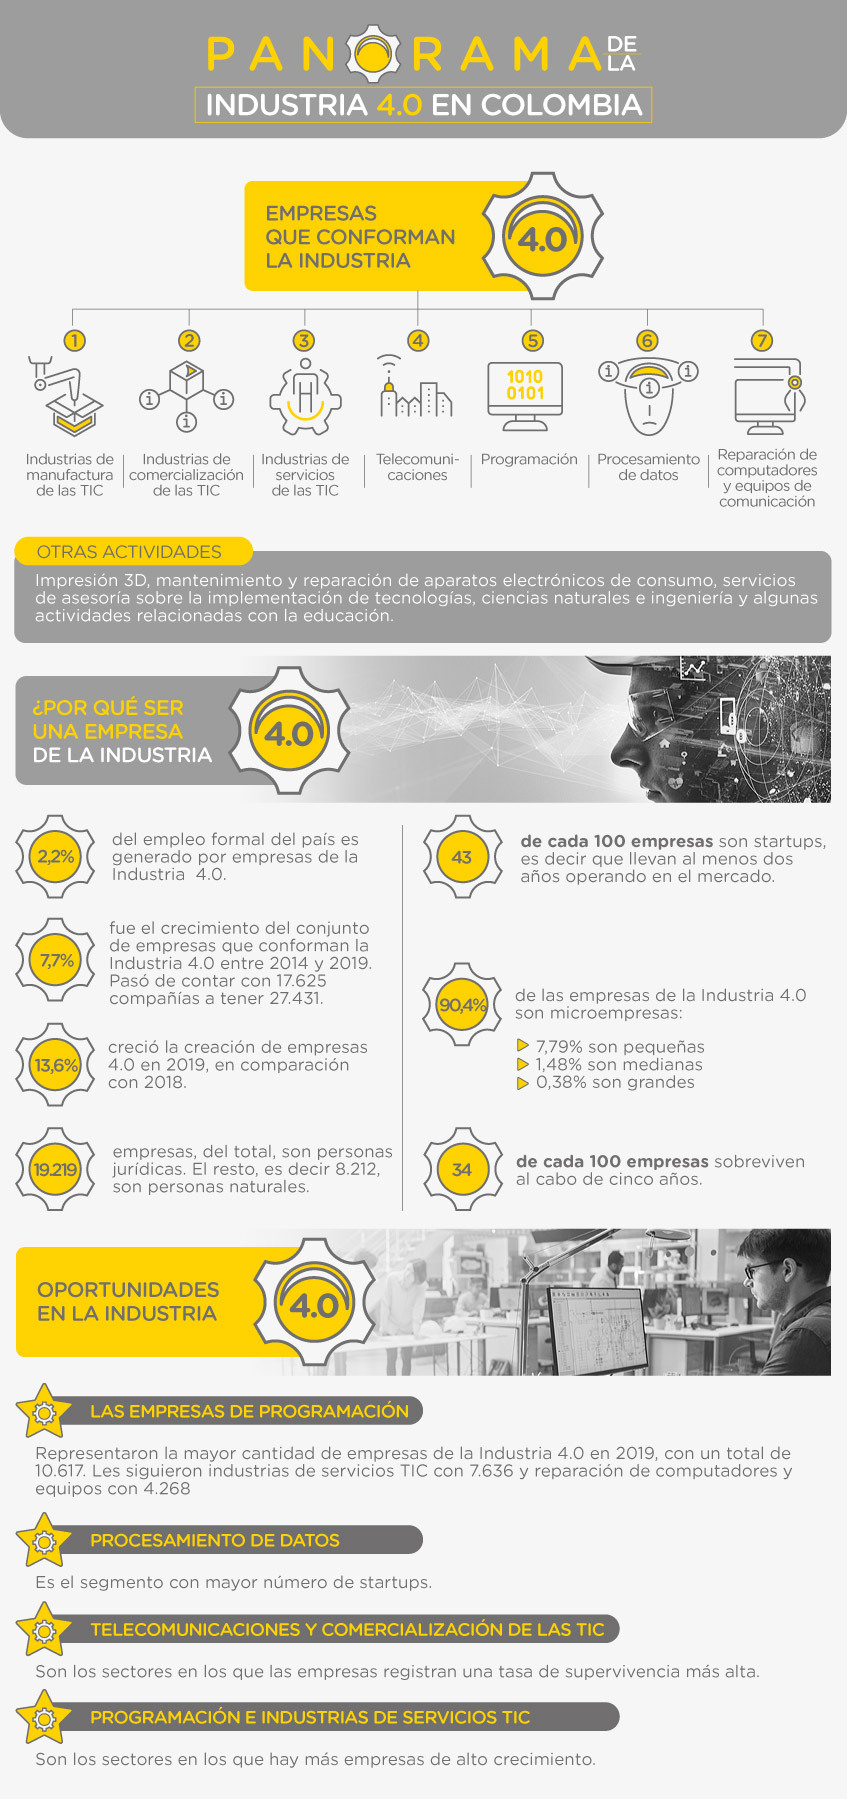 Panorama de la Industria 4.0 en Colombia